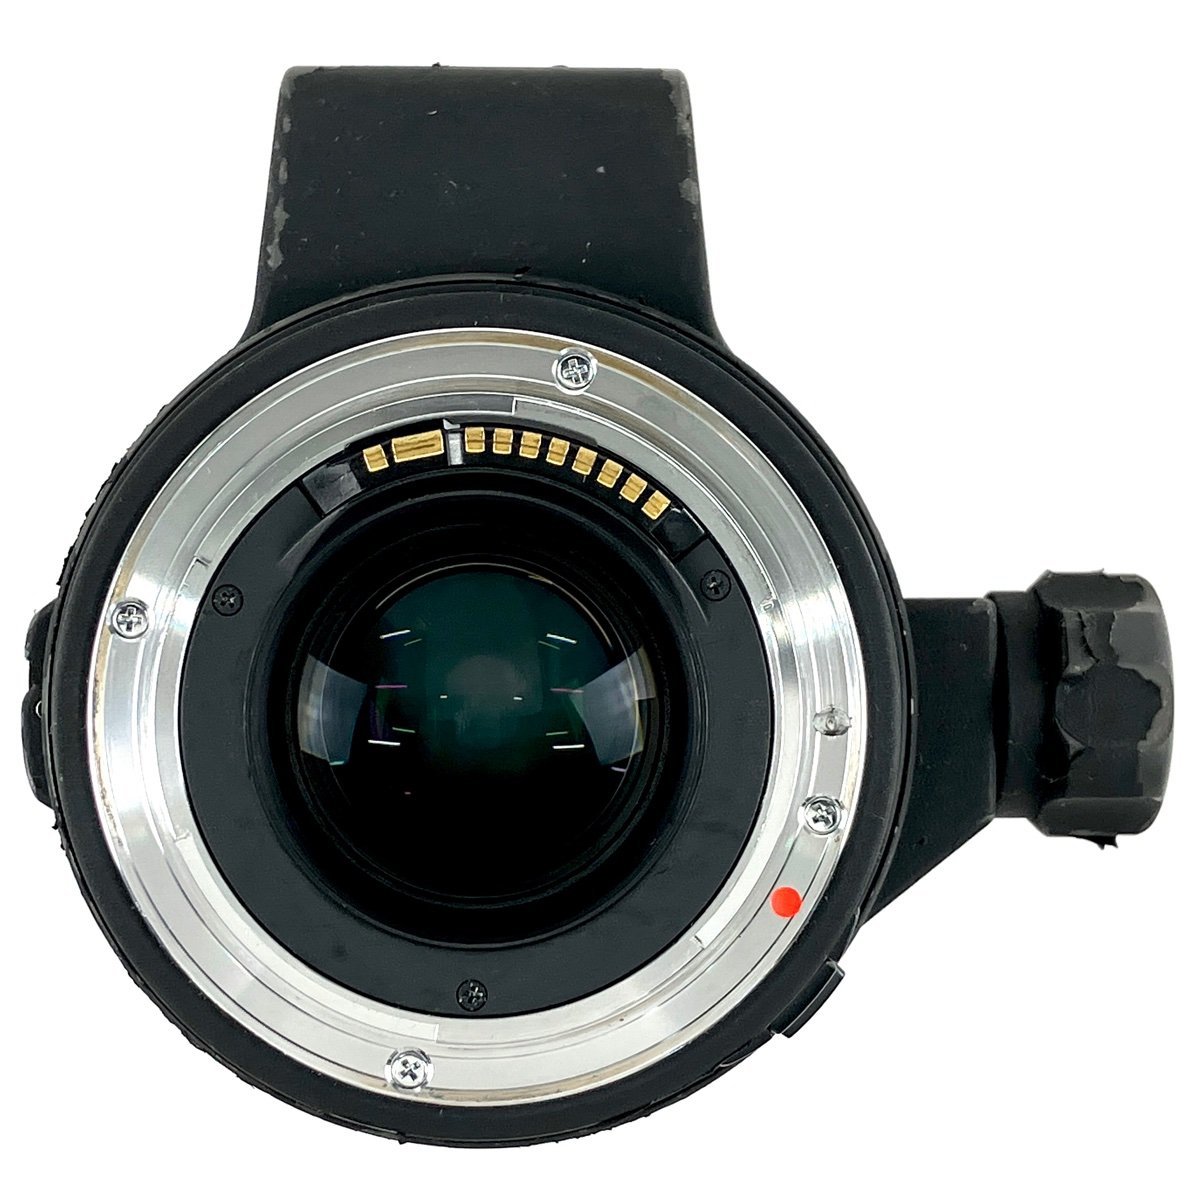 シグマ SIGMA APO MACRO 150mm F2.8 EX DG OS HSM マクロ (キヤノン EF用) 一眼カメラ用レンズ（オートフォーカス） 【中古】_バイセル 31064_5